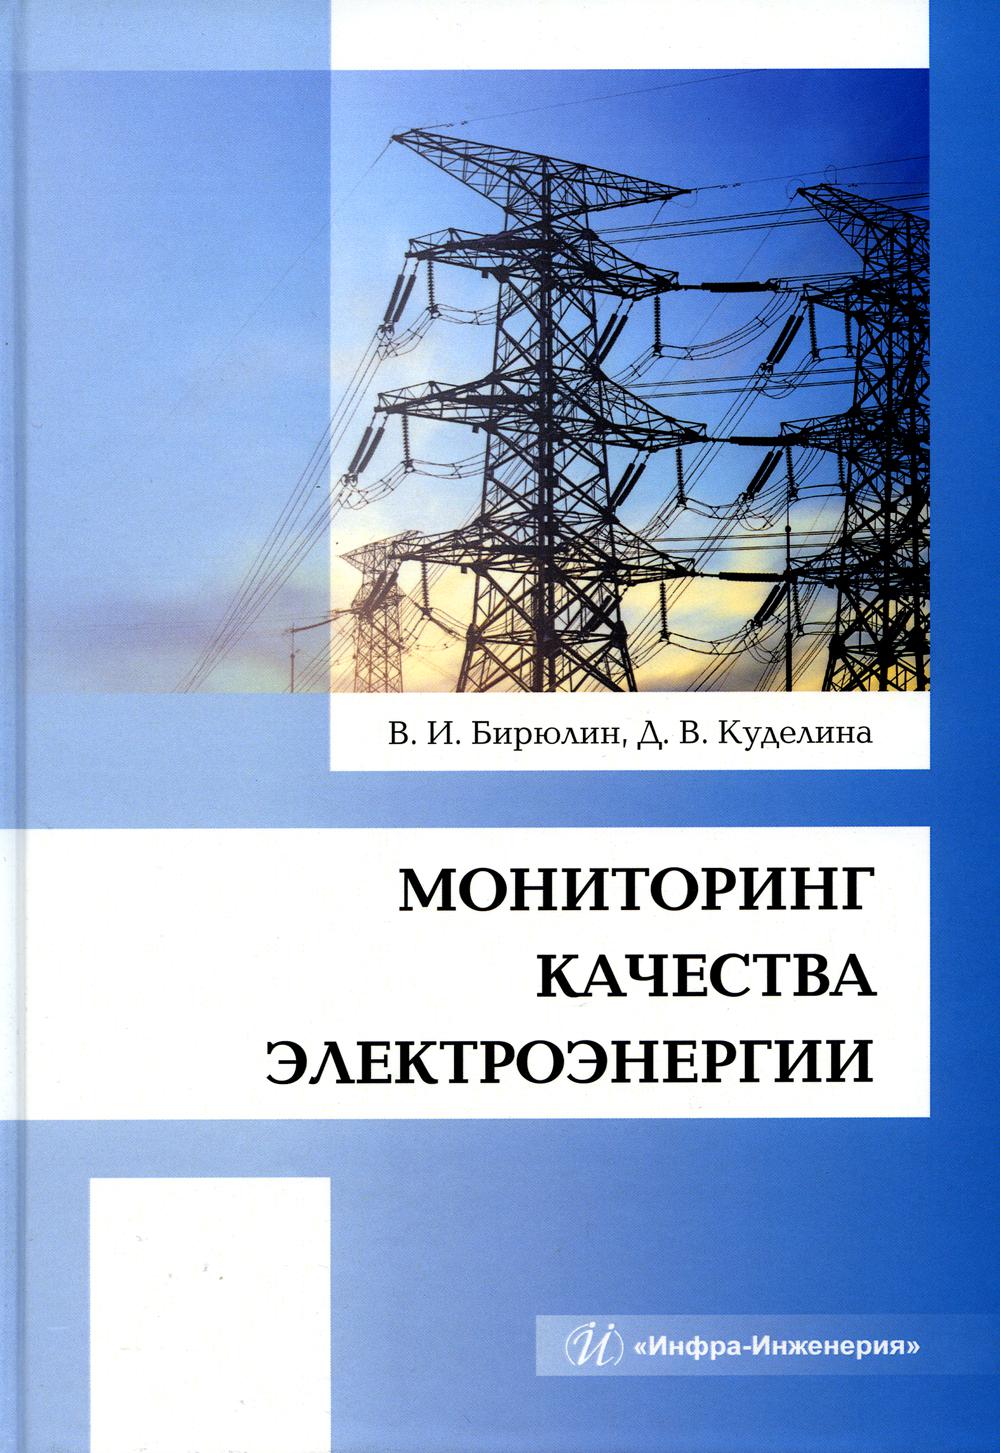 Мониторинг качества электроэнергии: монография